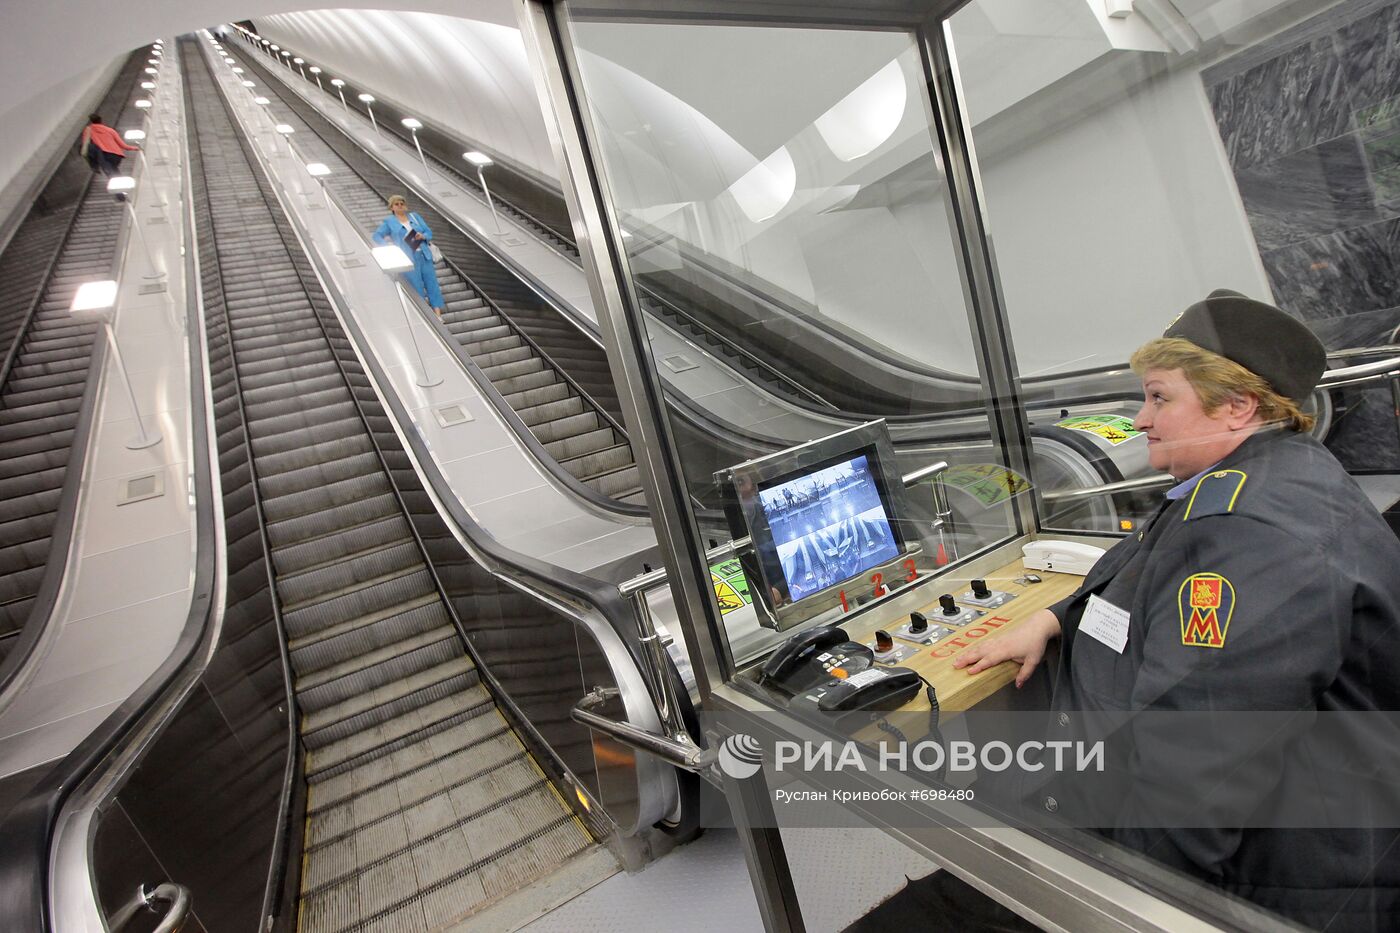 Эскалатор на станции метро "Достоевская"